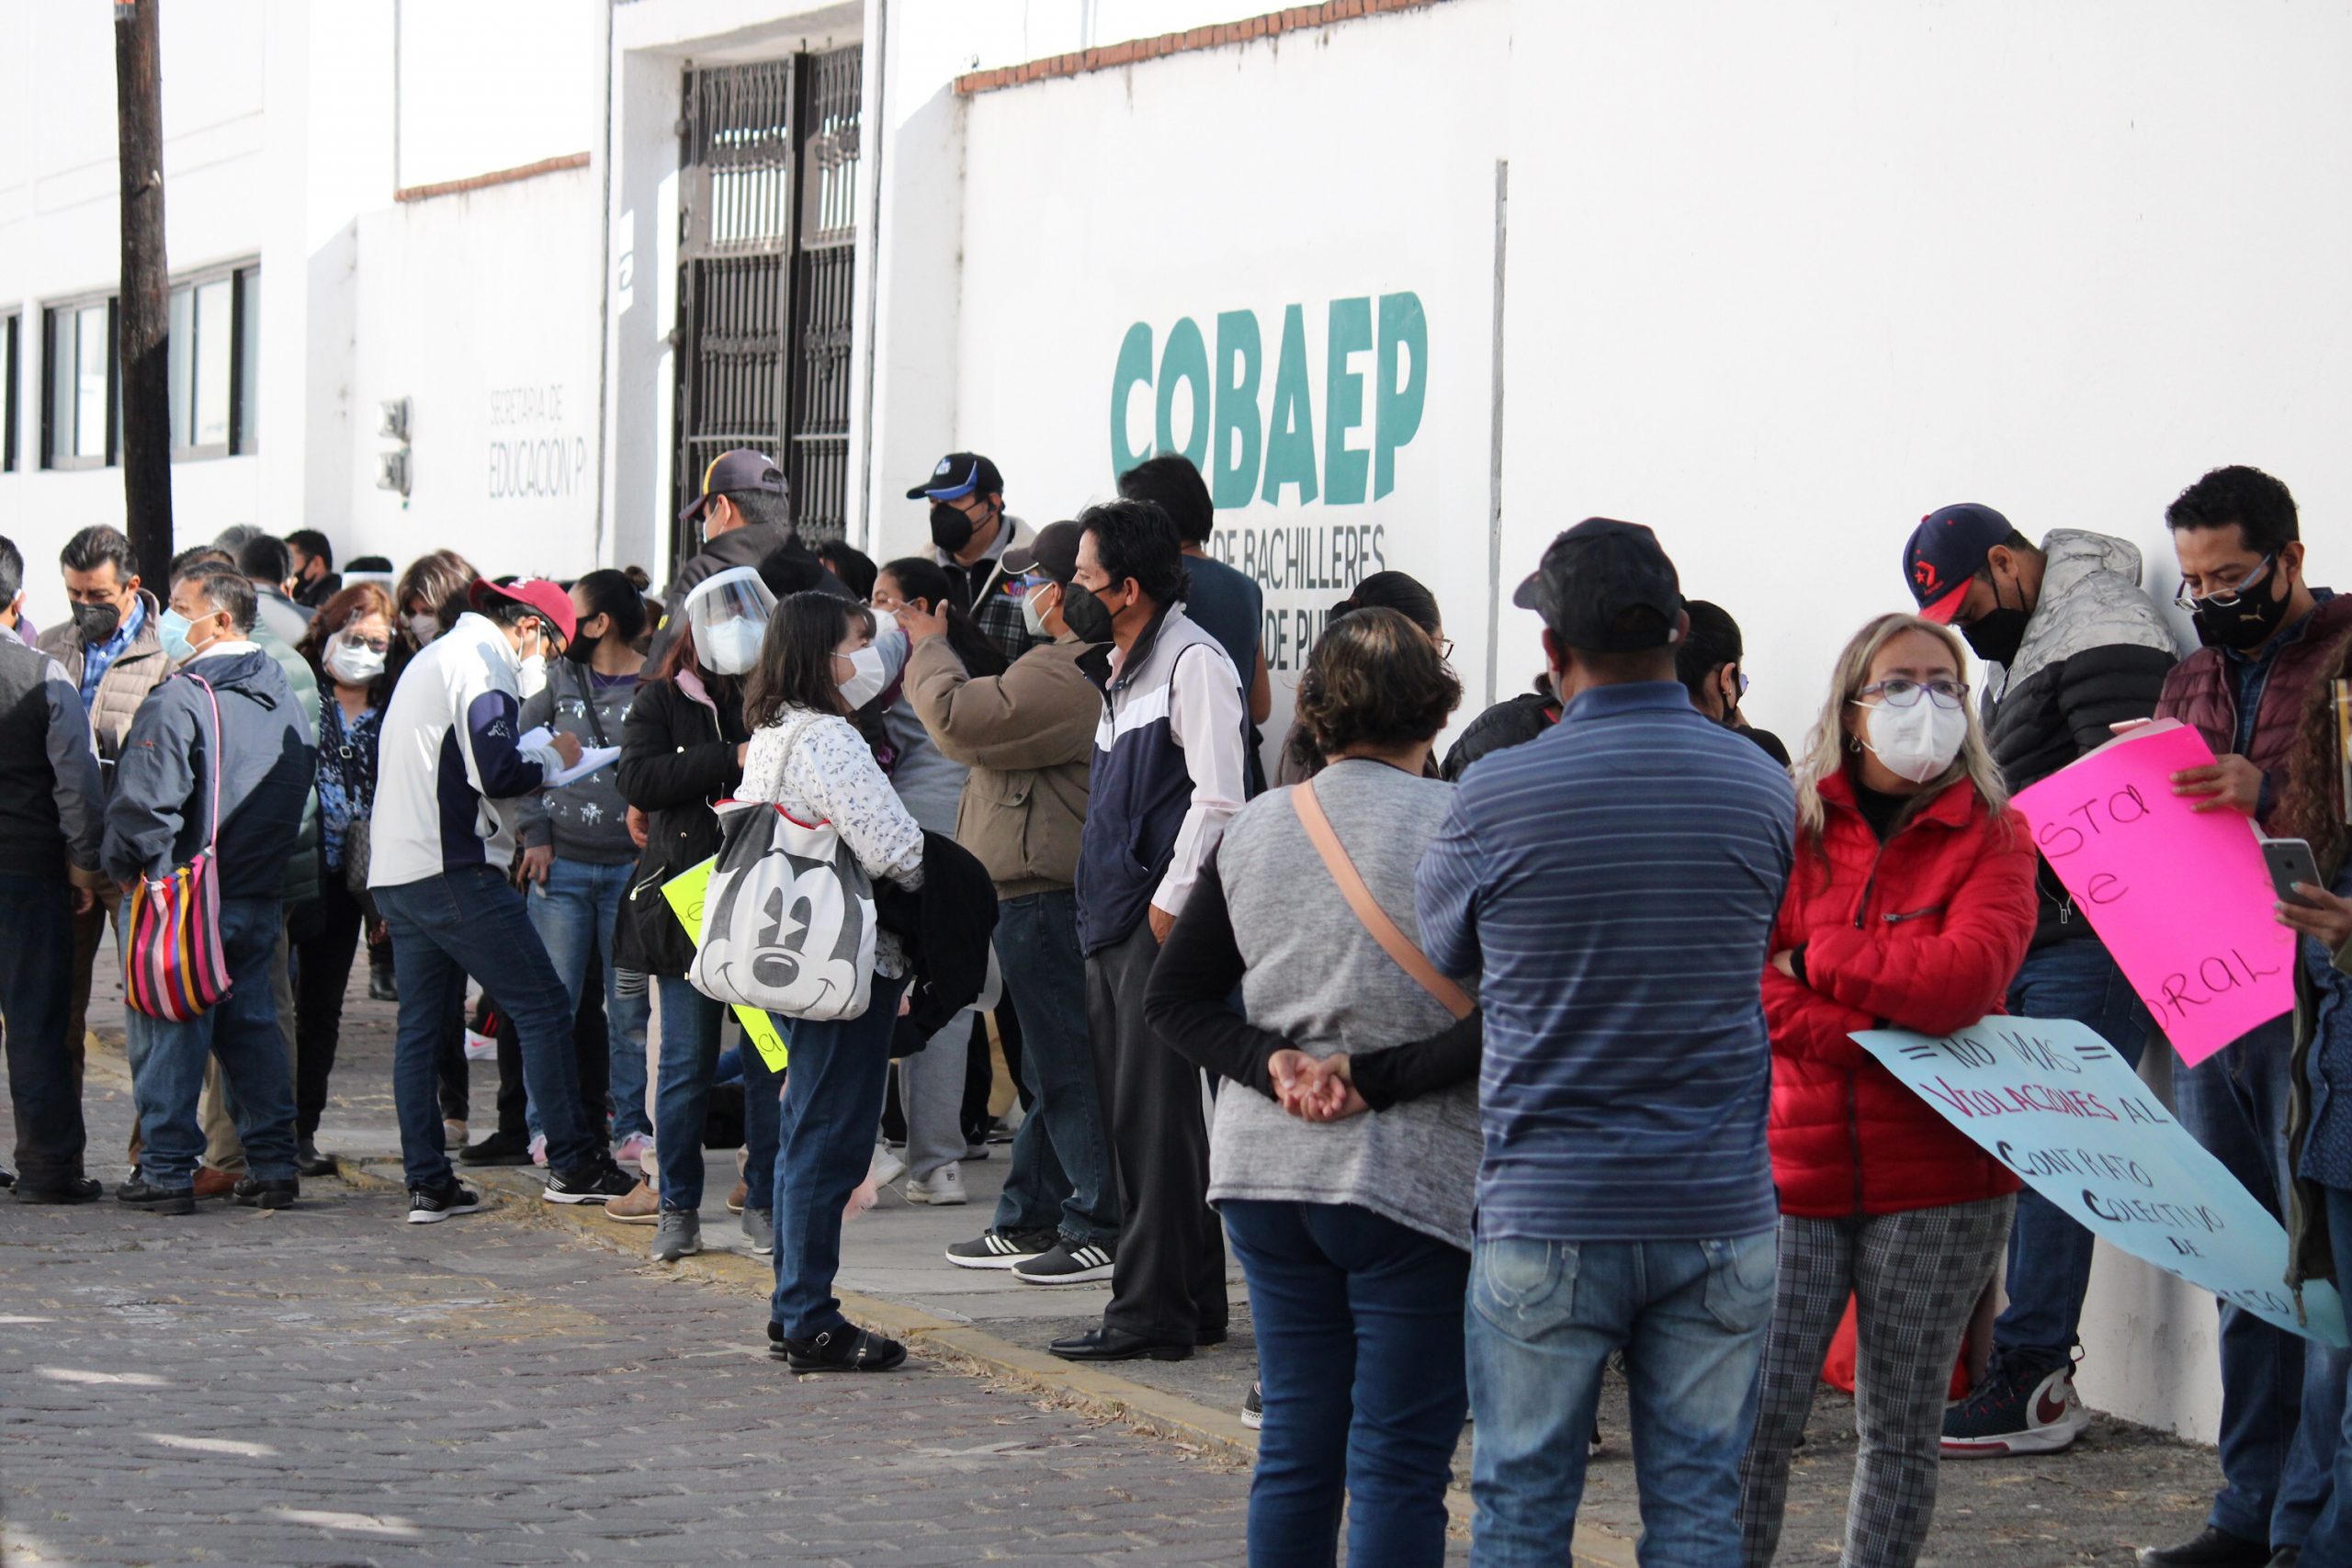 Toman sindicalizados instalaciones del COBAEP para exigir respeto a sus derechos laborales